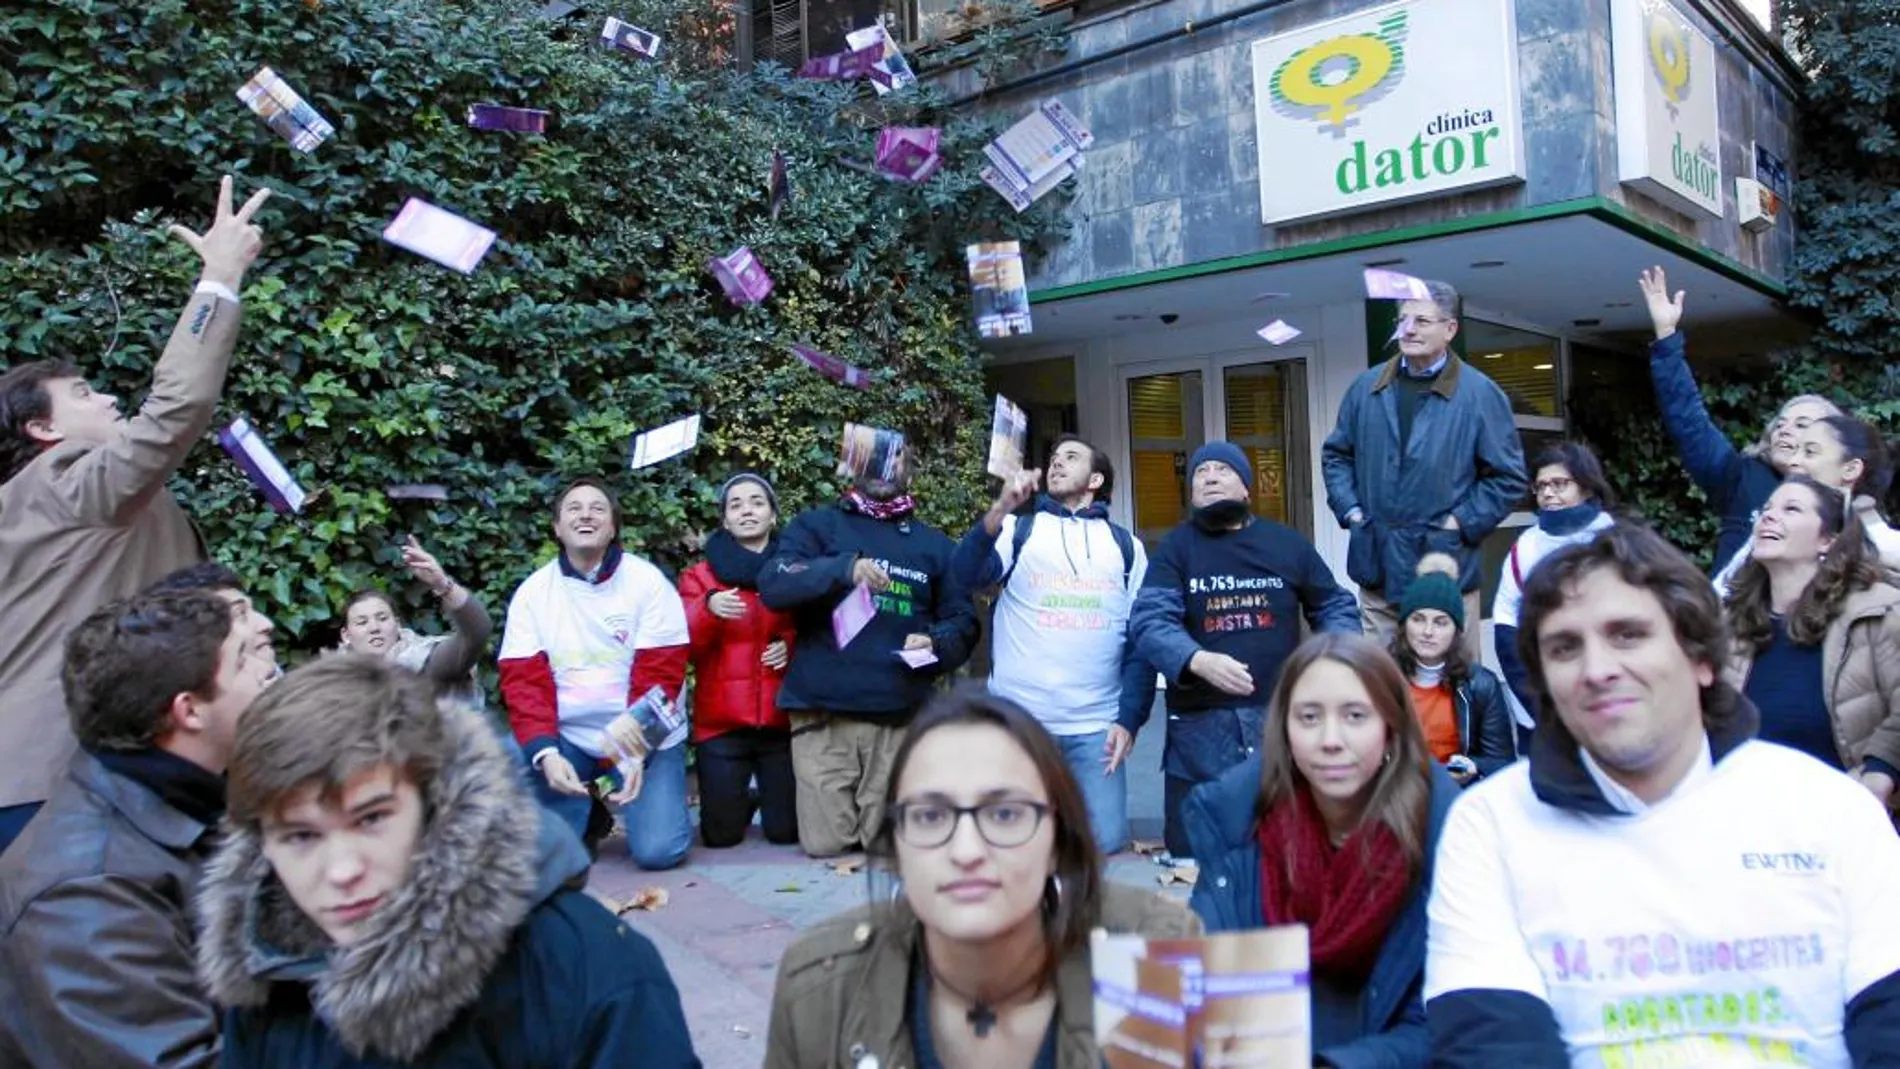 Activistas provida protestan por la aplicación del aborto ante la puerta de la clínica Dator de Madrid.